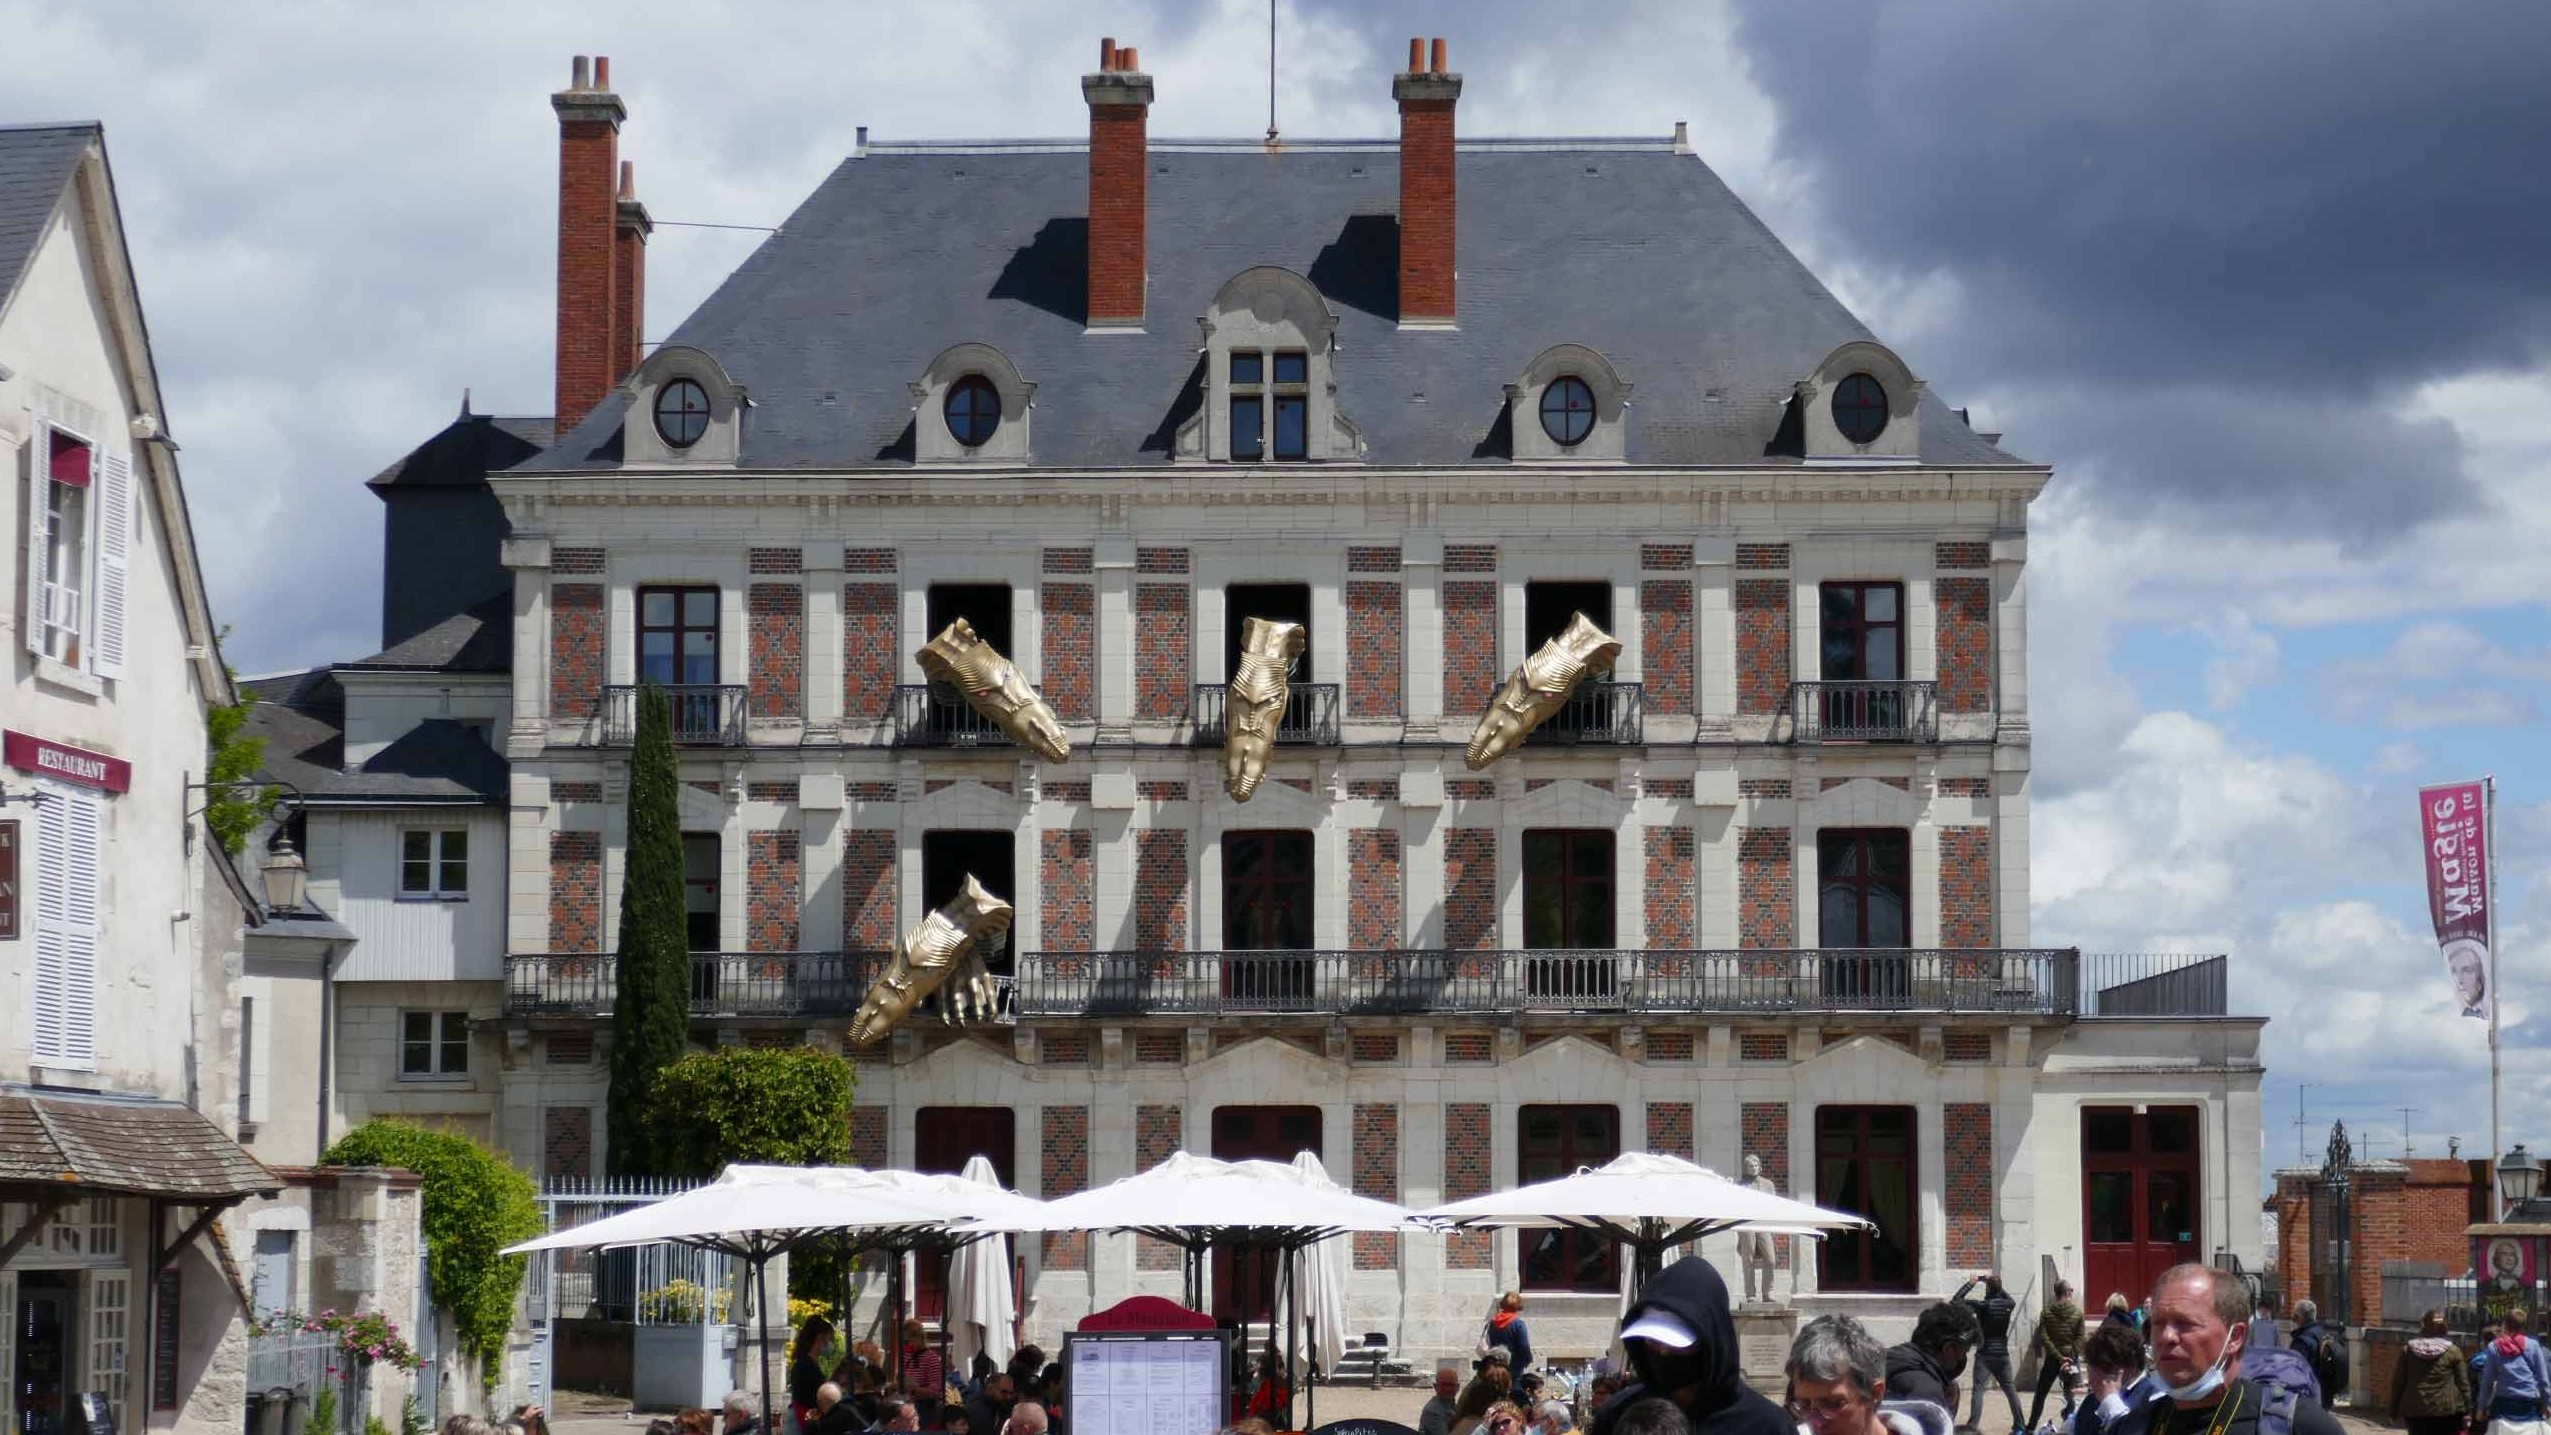 Maison de la Magie in Blois